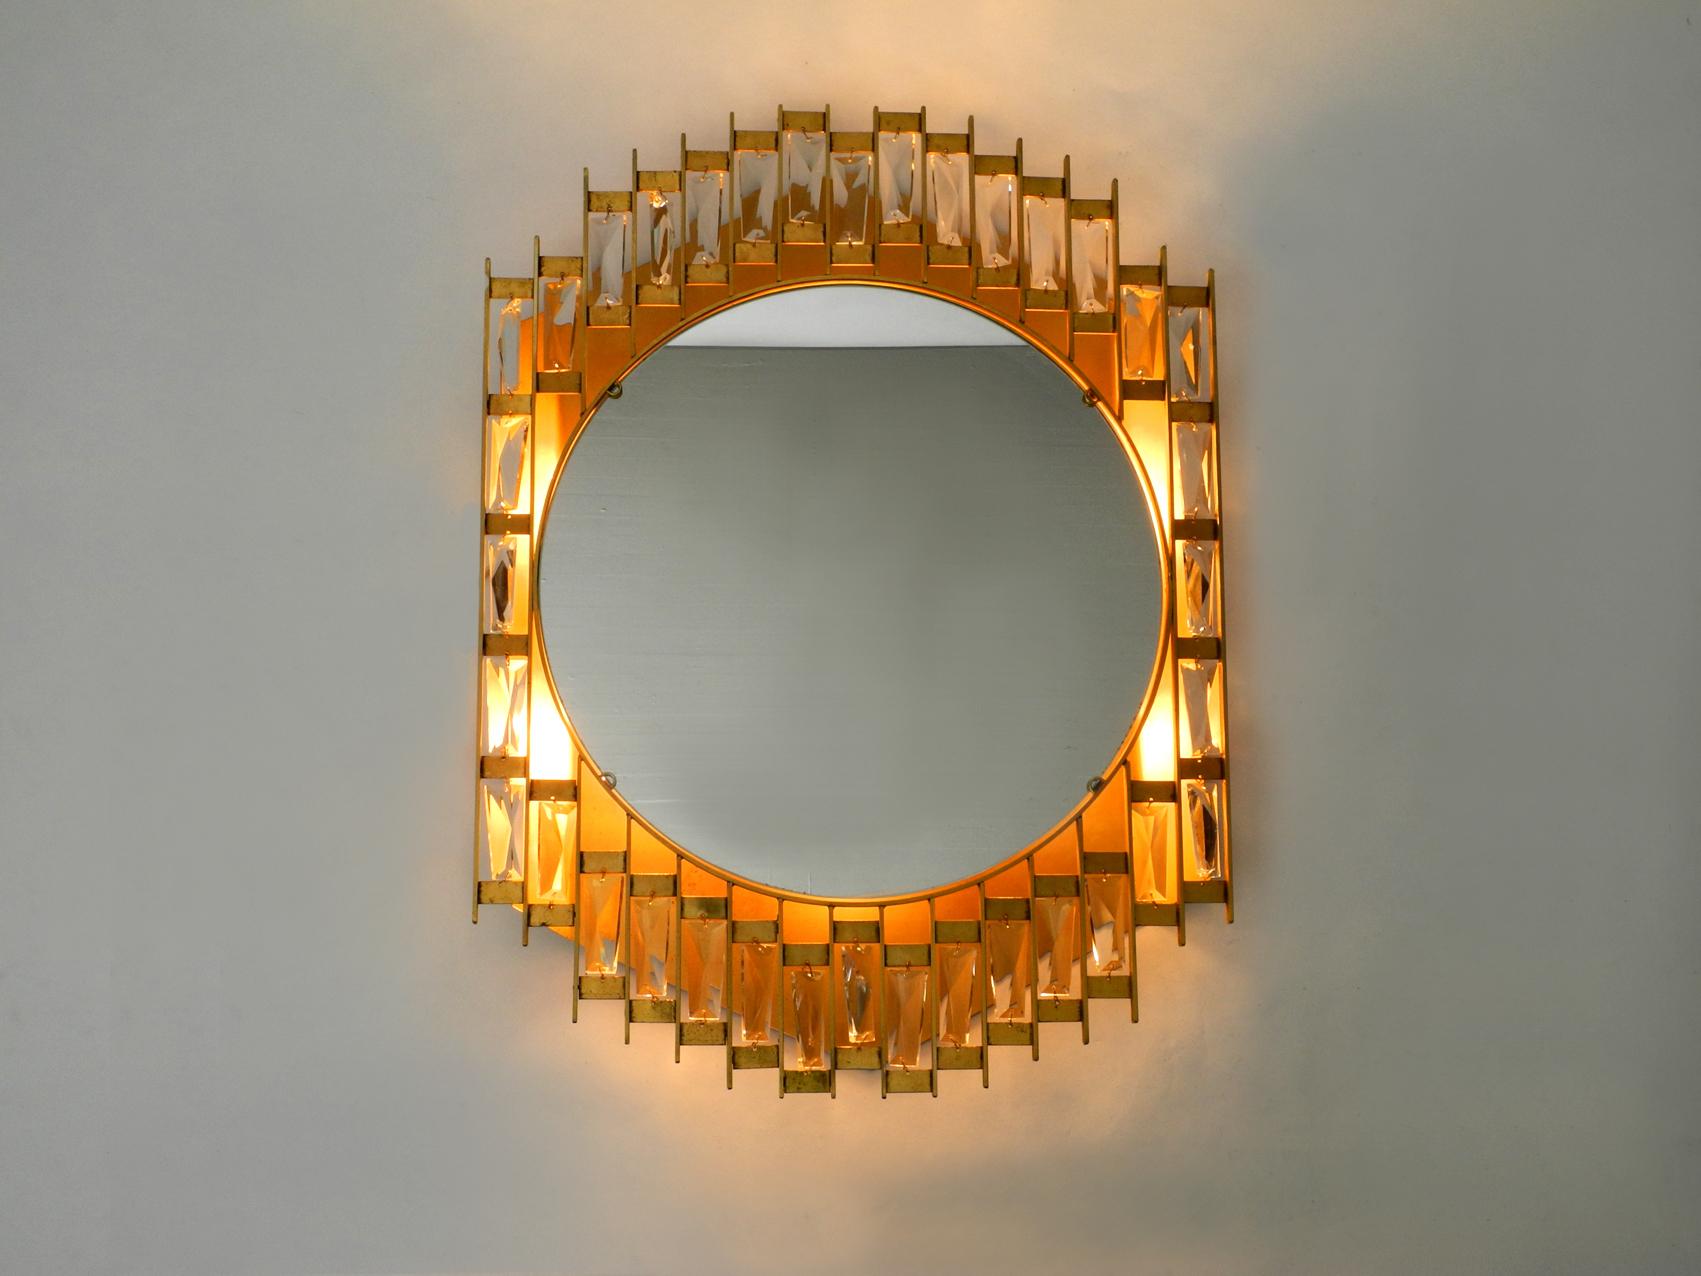 German 1960s Golden Brutalist Design Wall Backlit Mirror by Hillebrand Made of Metal